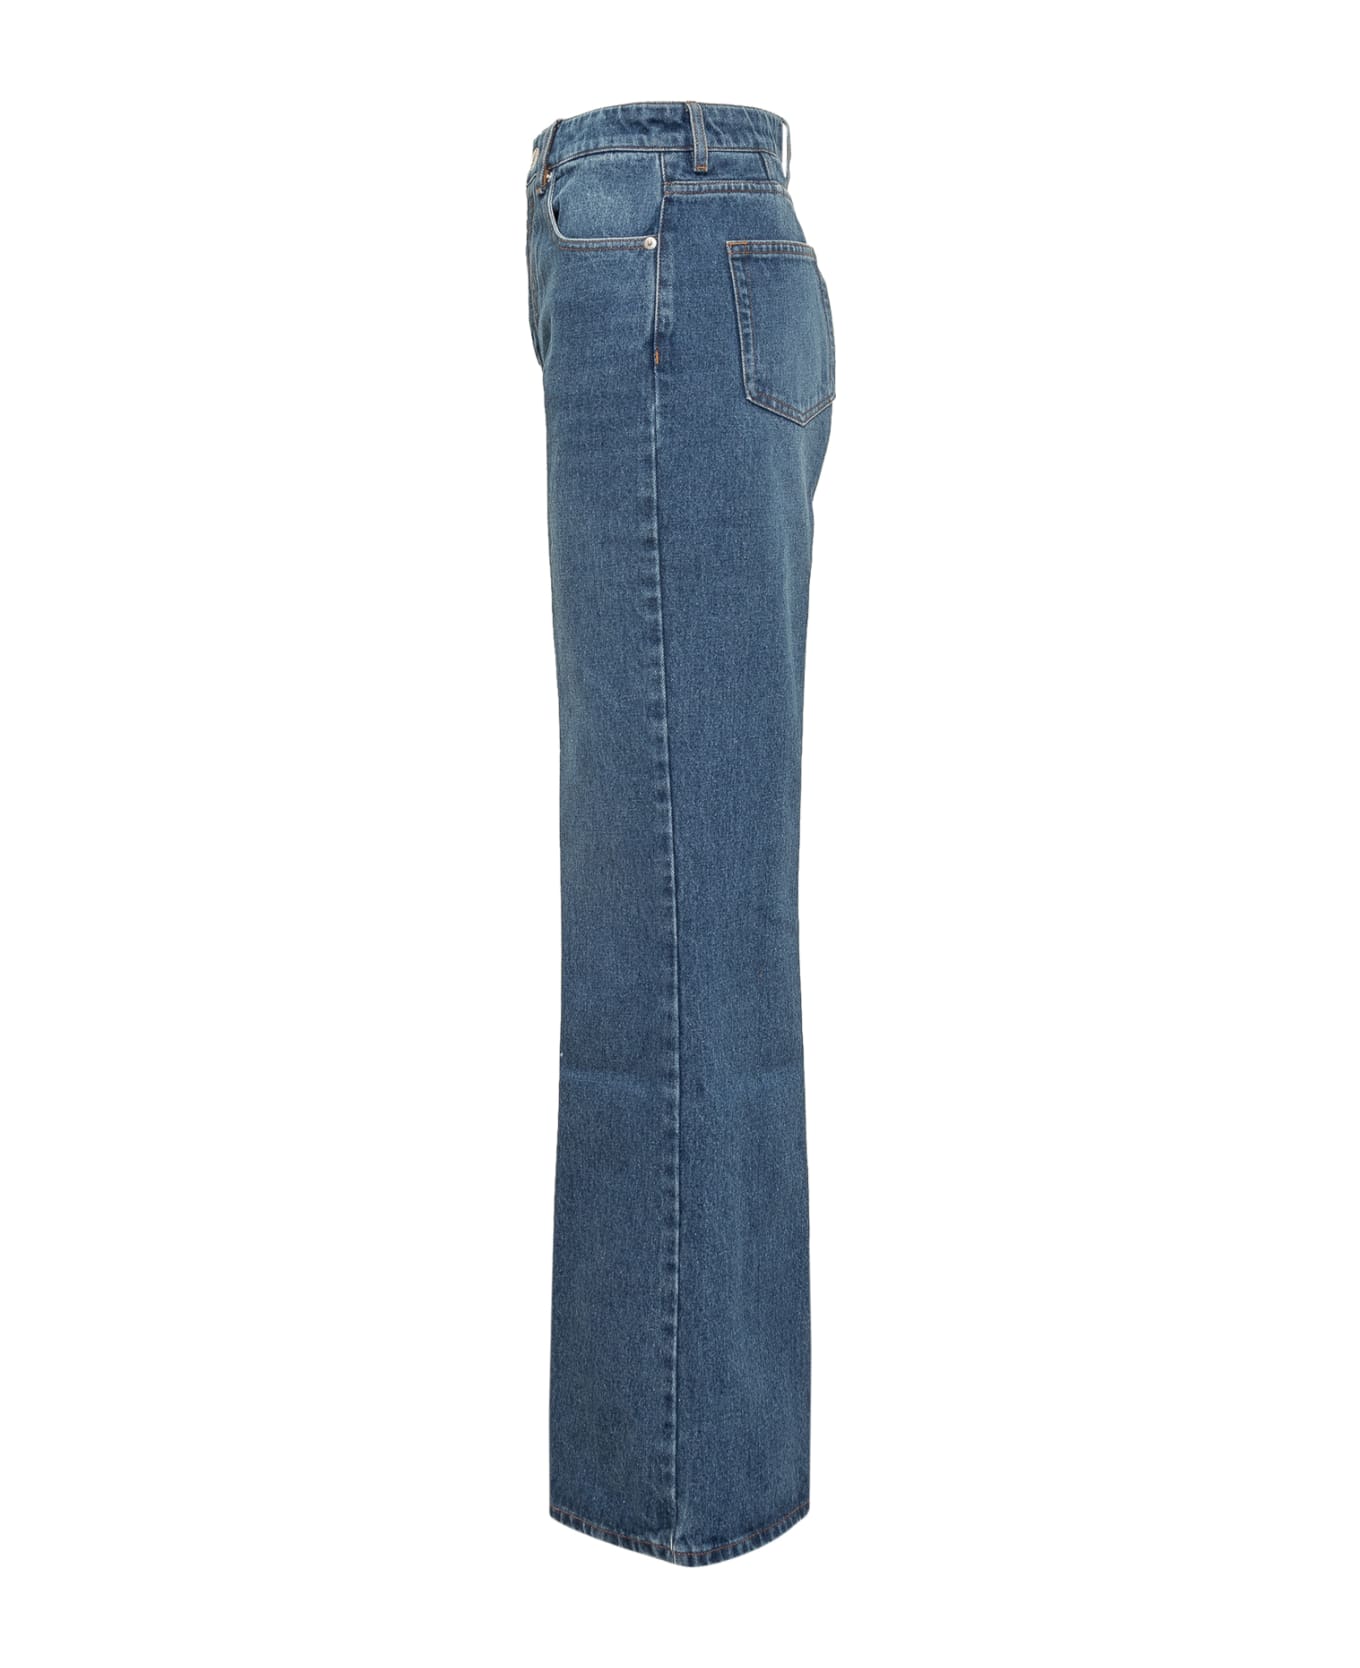 Ami Alexandre Mattiussi Flare Cotton Denim Jeans - USED BLUE